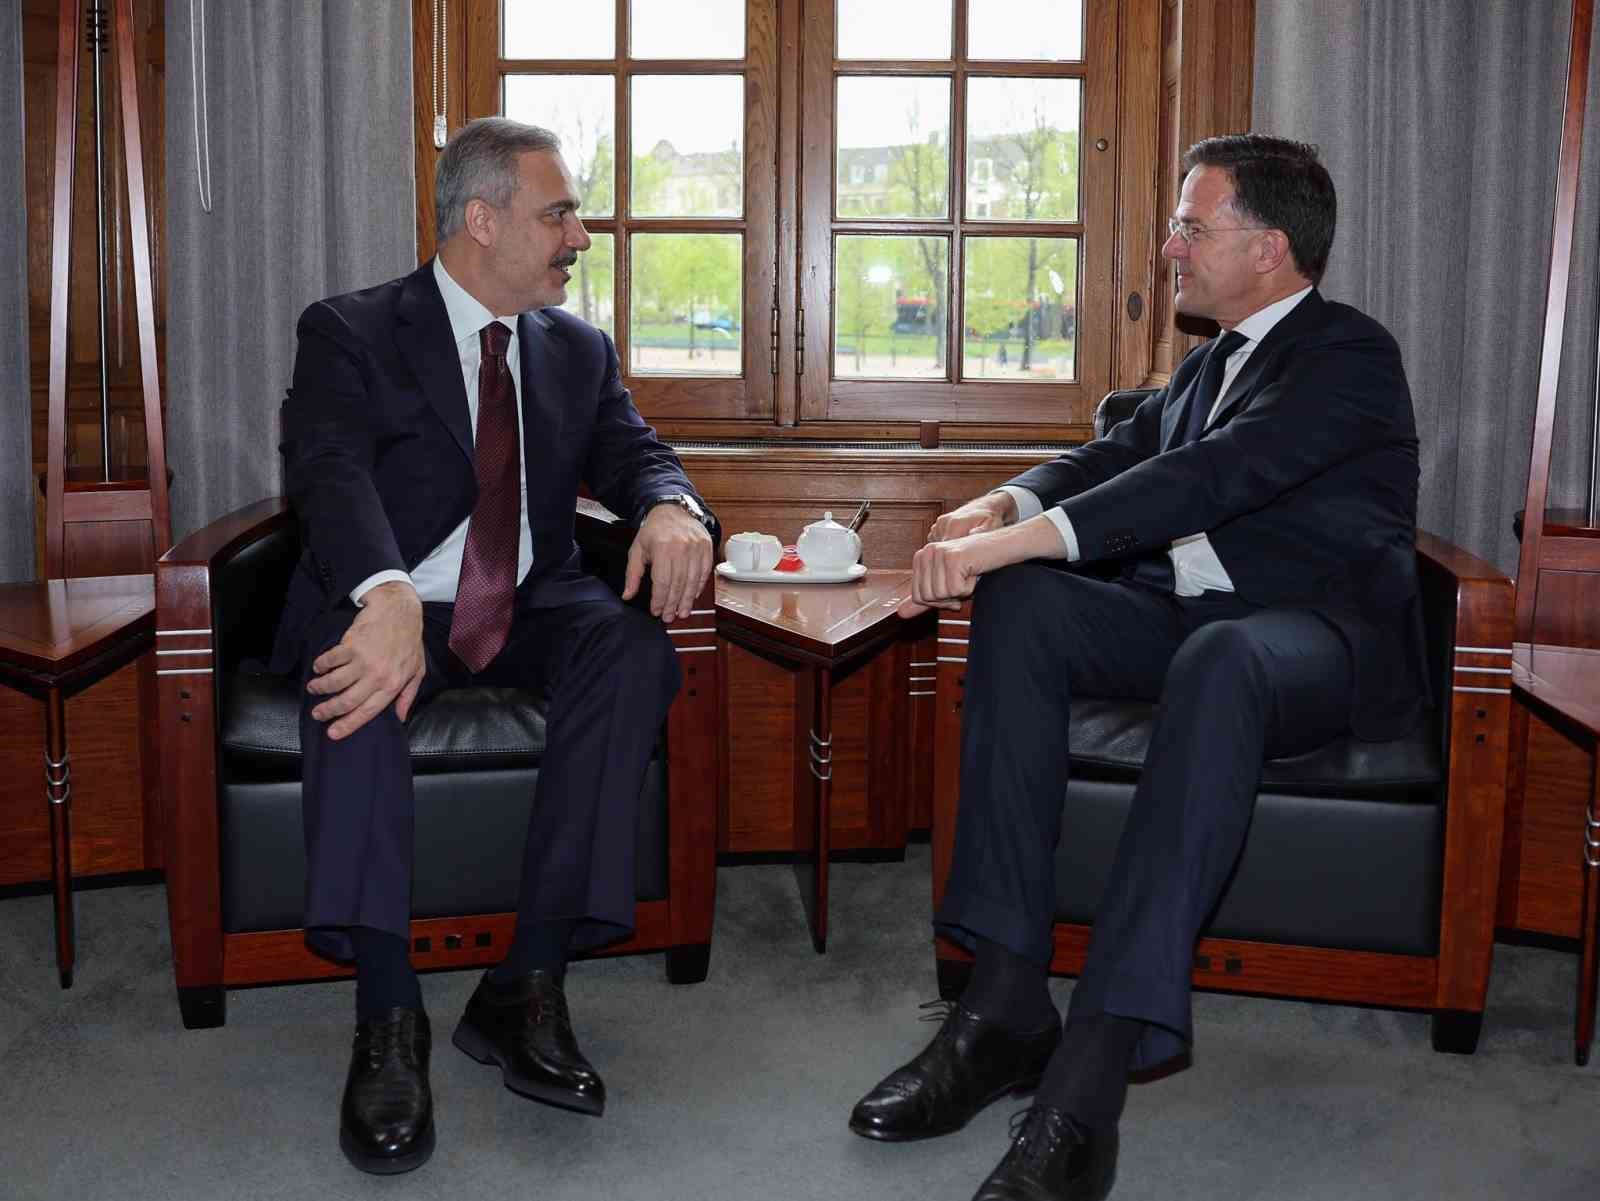 Bakan Fidan, Hollanda Başbakanı Rutte ile görüştü